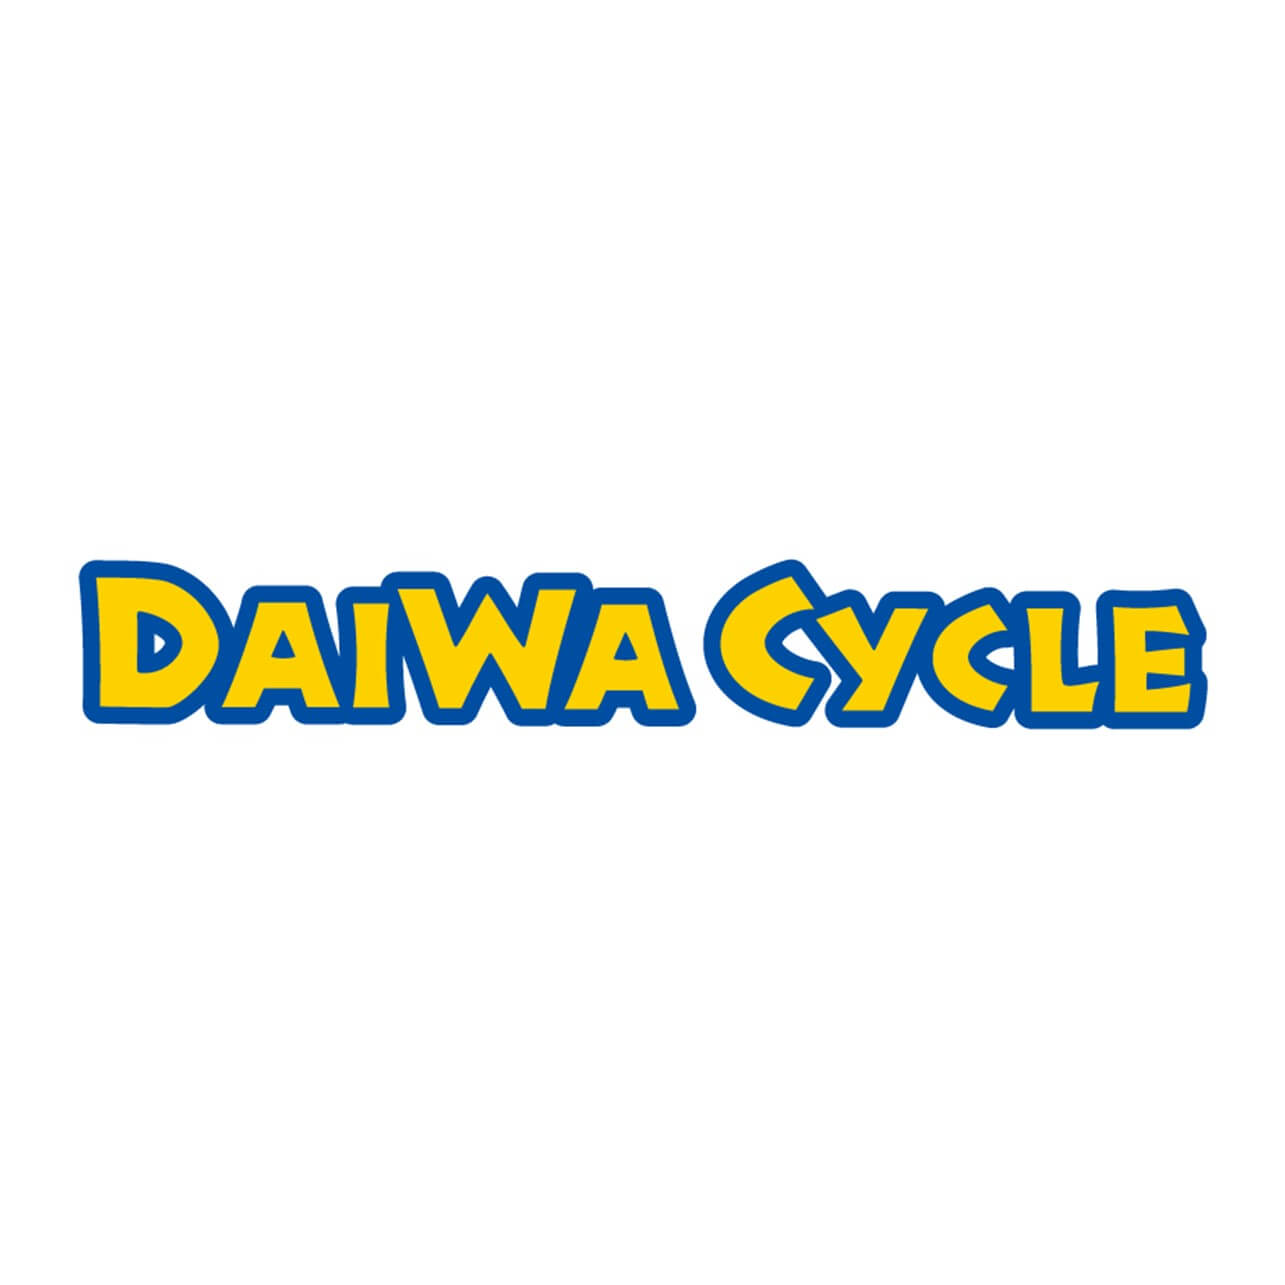 DAIWA CYCLE株式会社